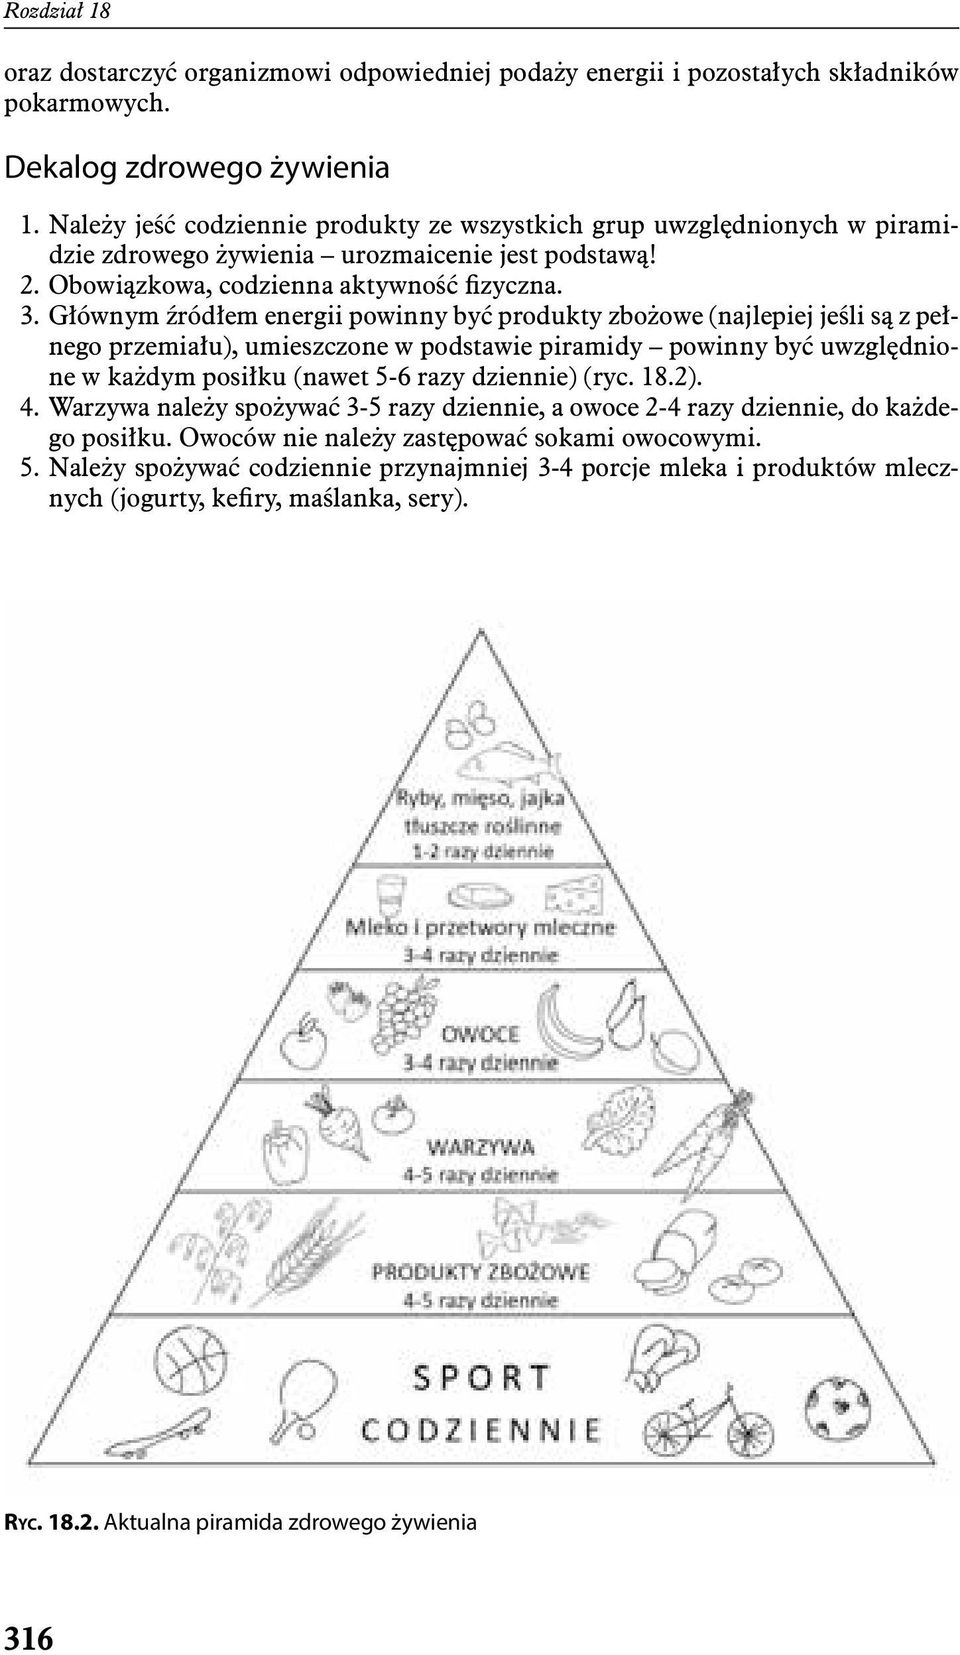 Głównym źródłem energii powinny być produkty zbożowe (najlepiej jeśli są z pełnego przemiału), umieszczone w podstawie piramidy powinny być uwzględnione w każdym posiłku (nawet 5-6 razy dziennie)